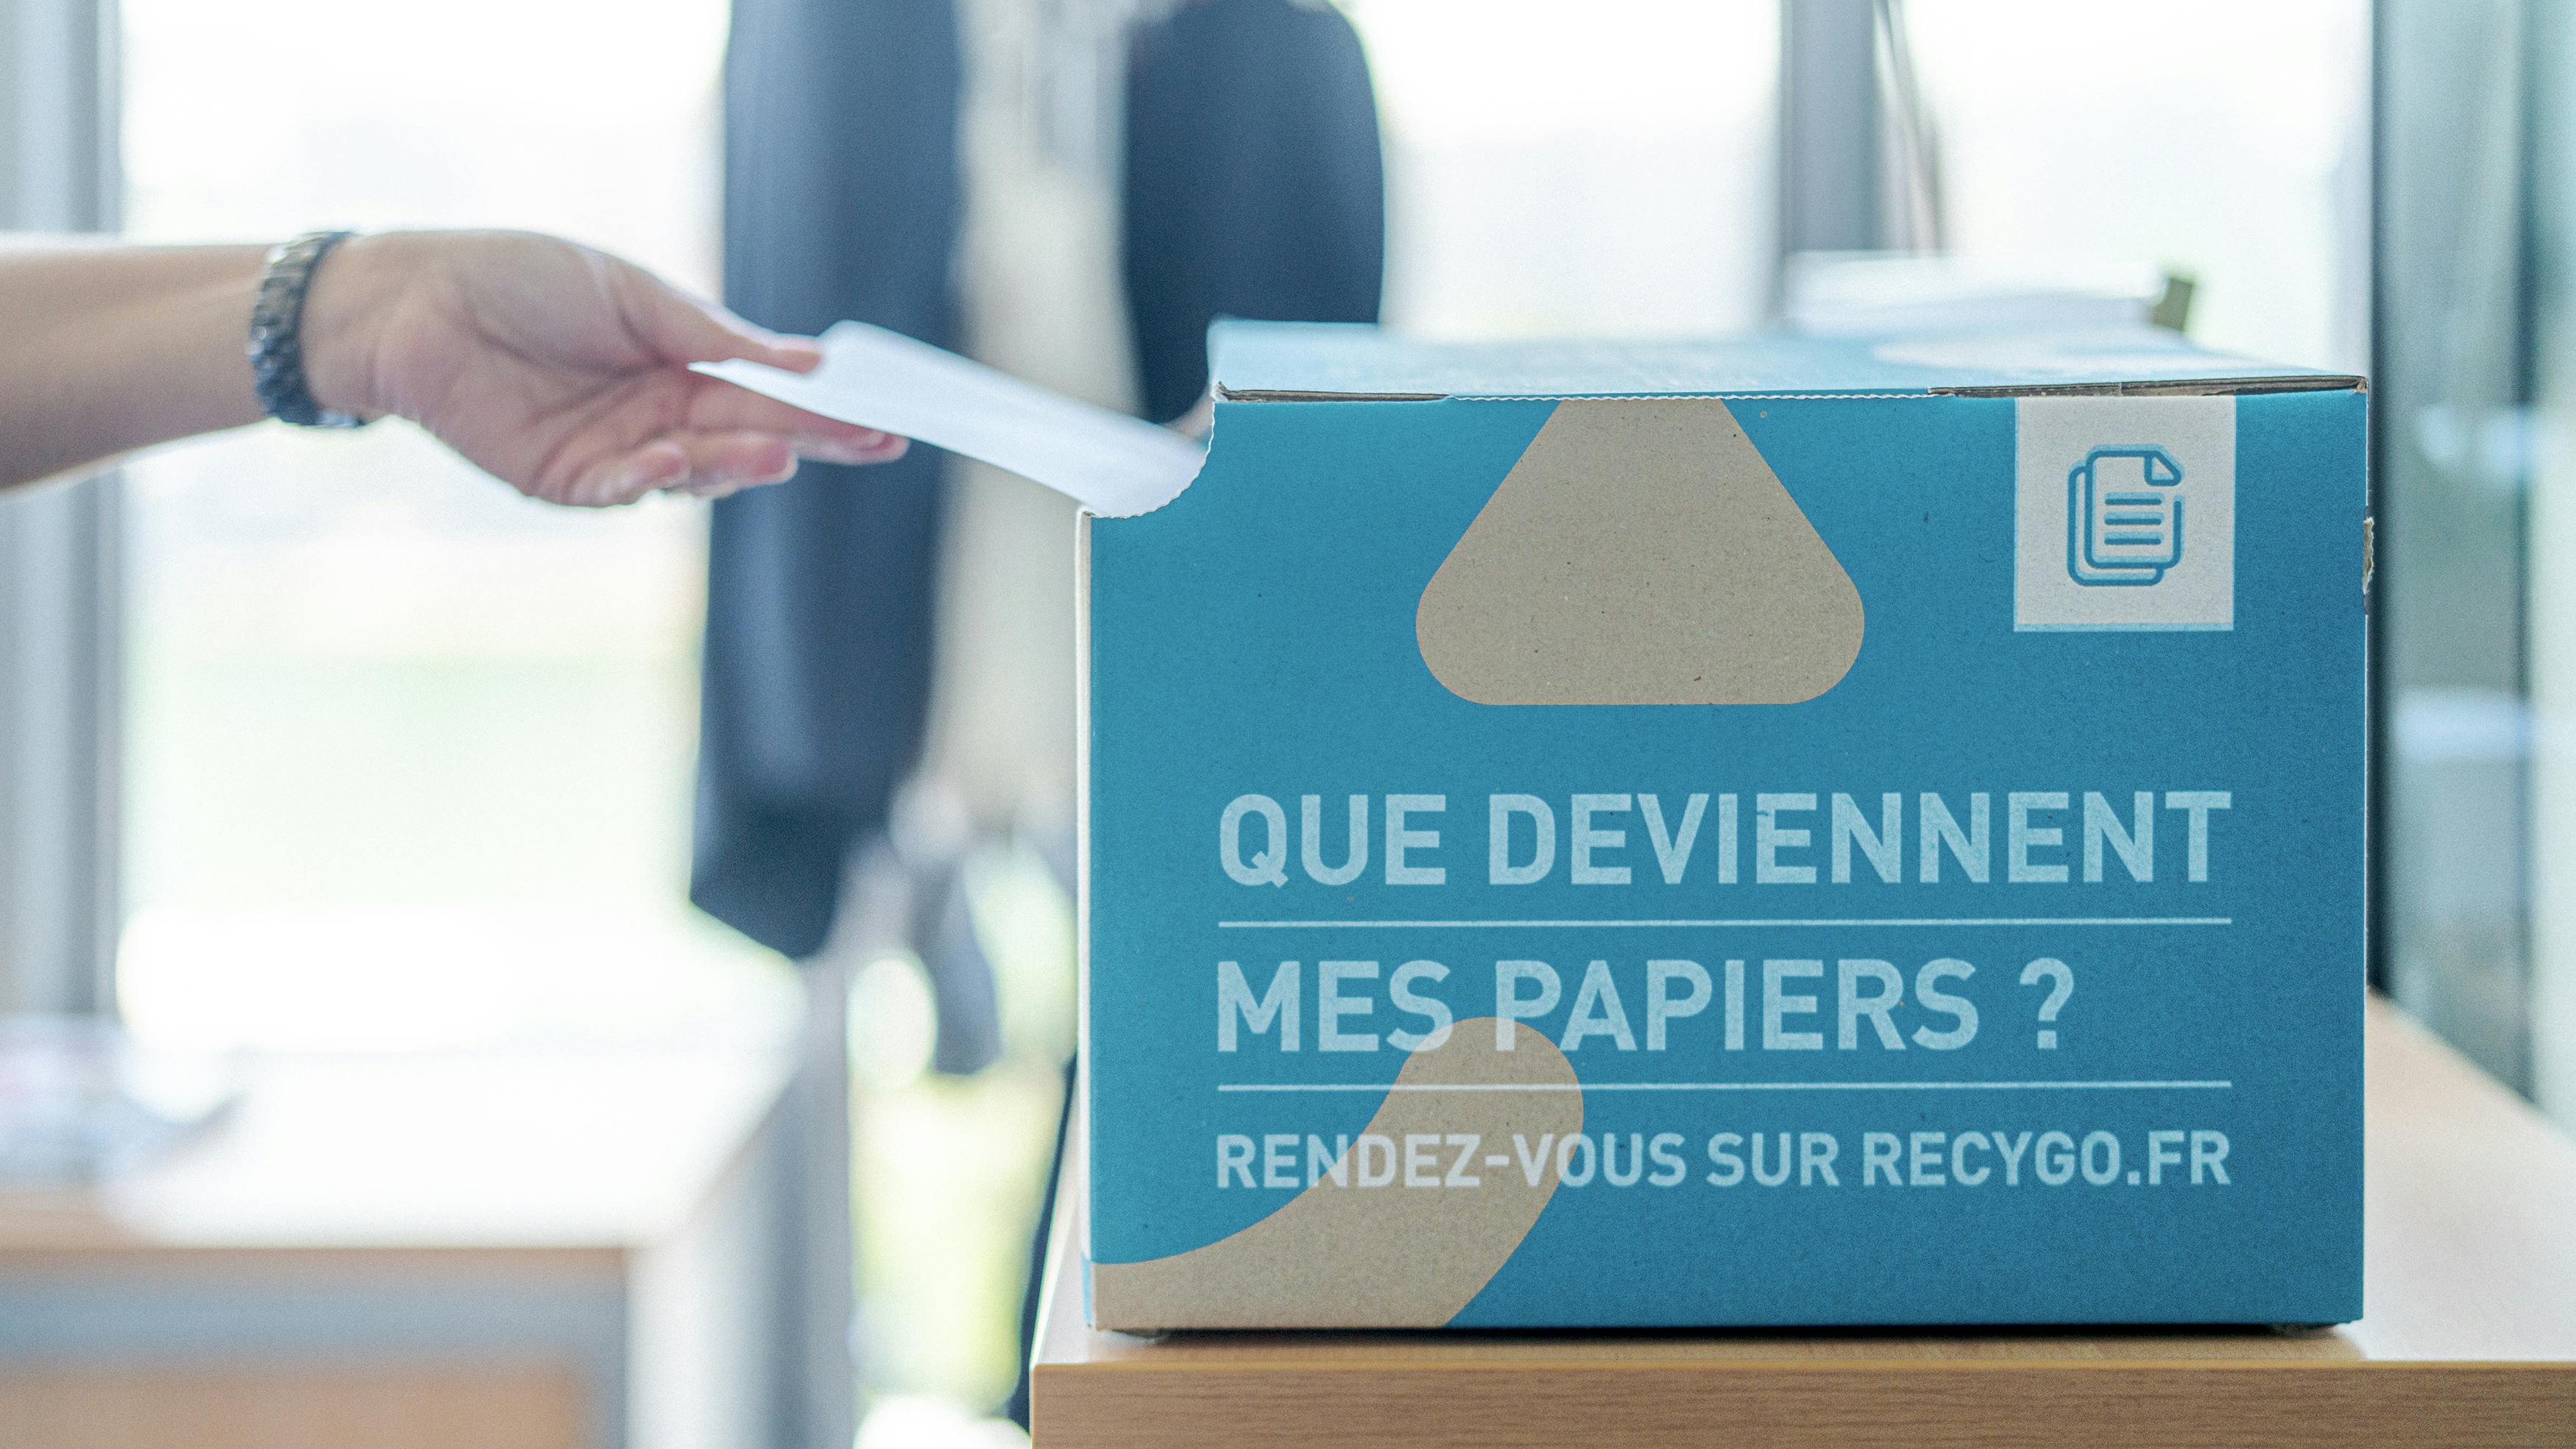 recyclage bulletin de vote